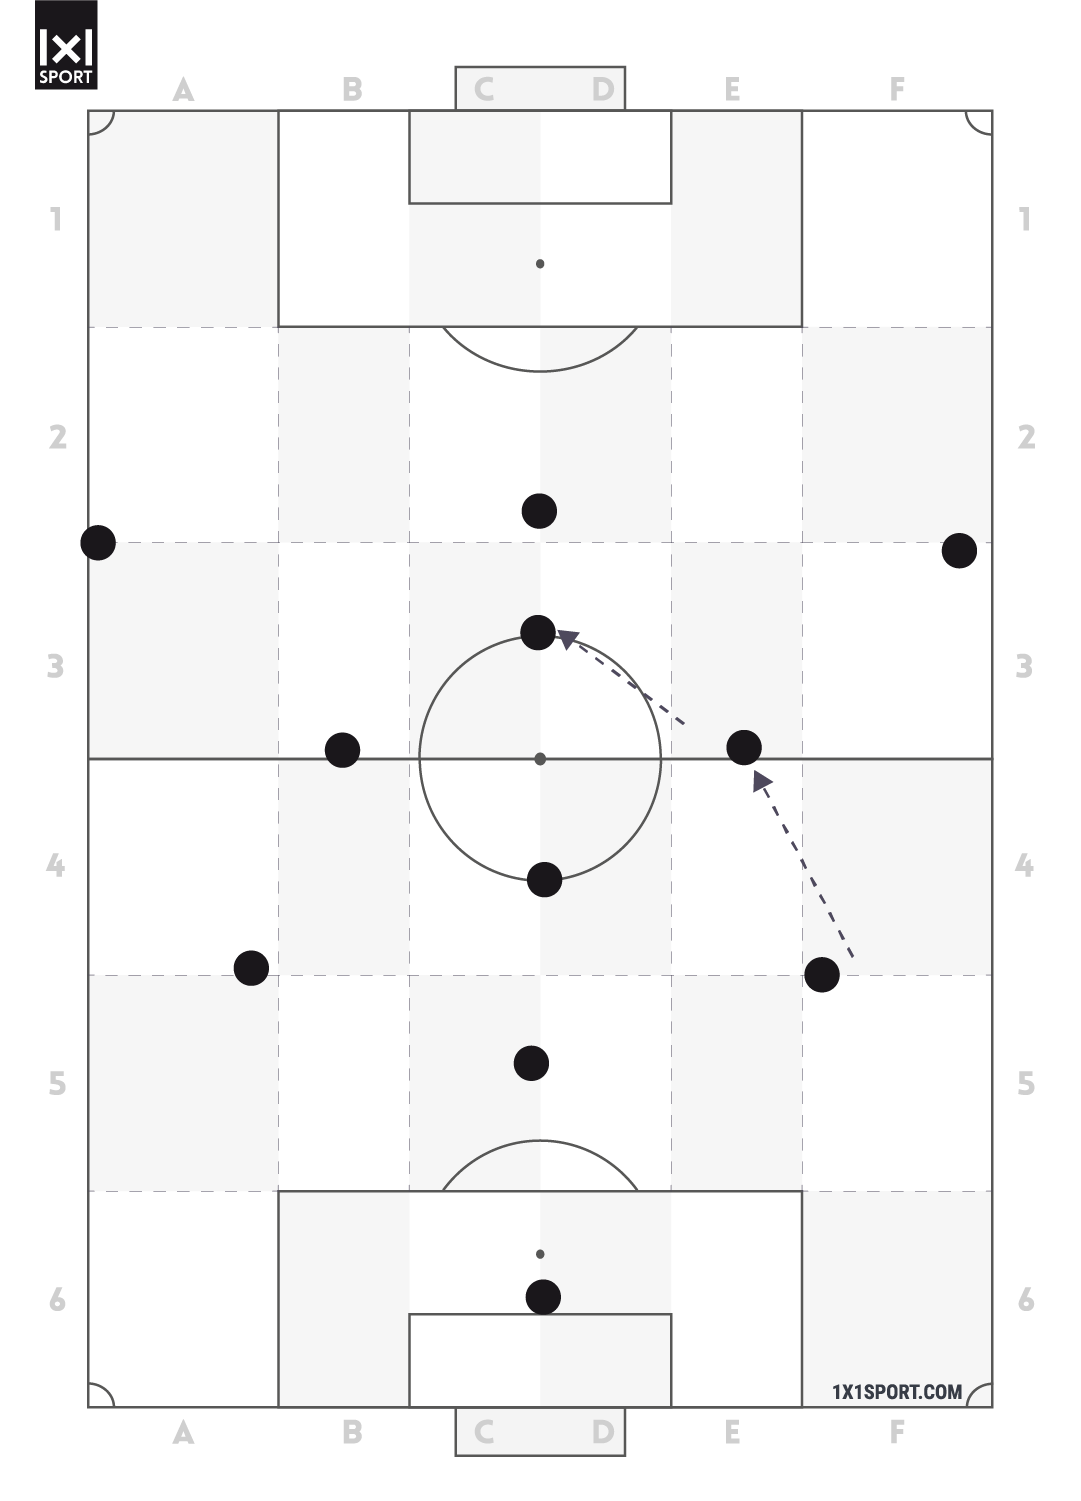 Die offensive Grundordnung 3-4-3 mit einer Mittelfeldraute, die aus der defensiven Grundordnung 4-3-3 gebildet wurde.